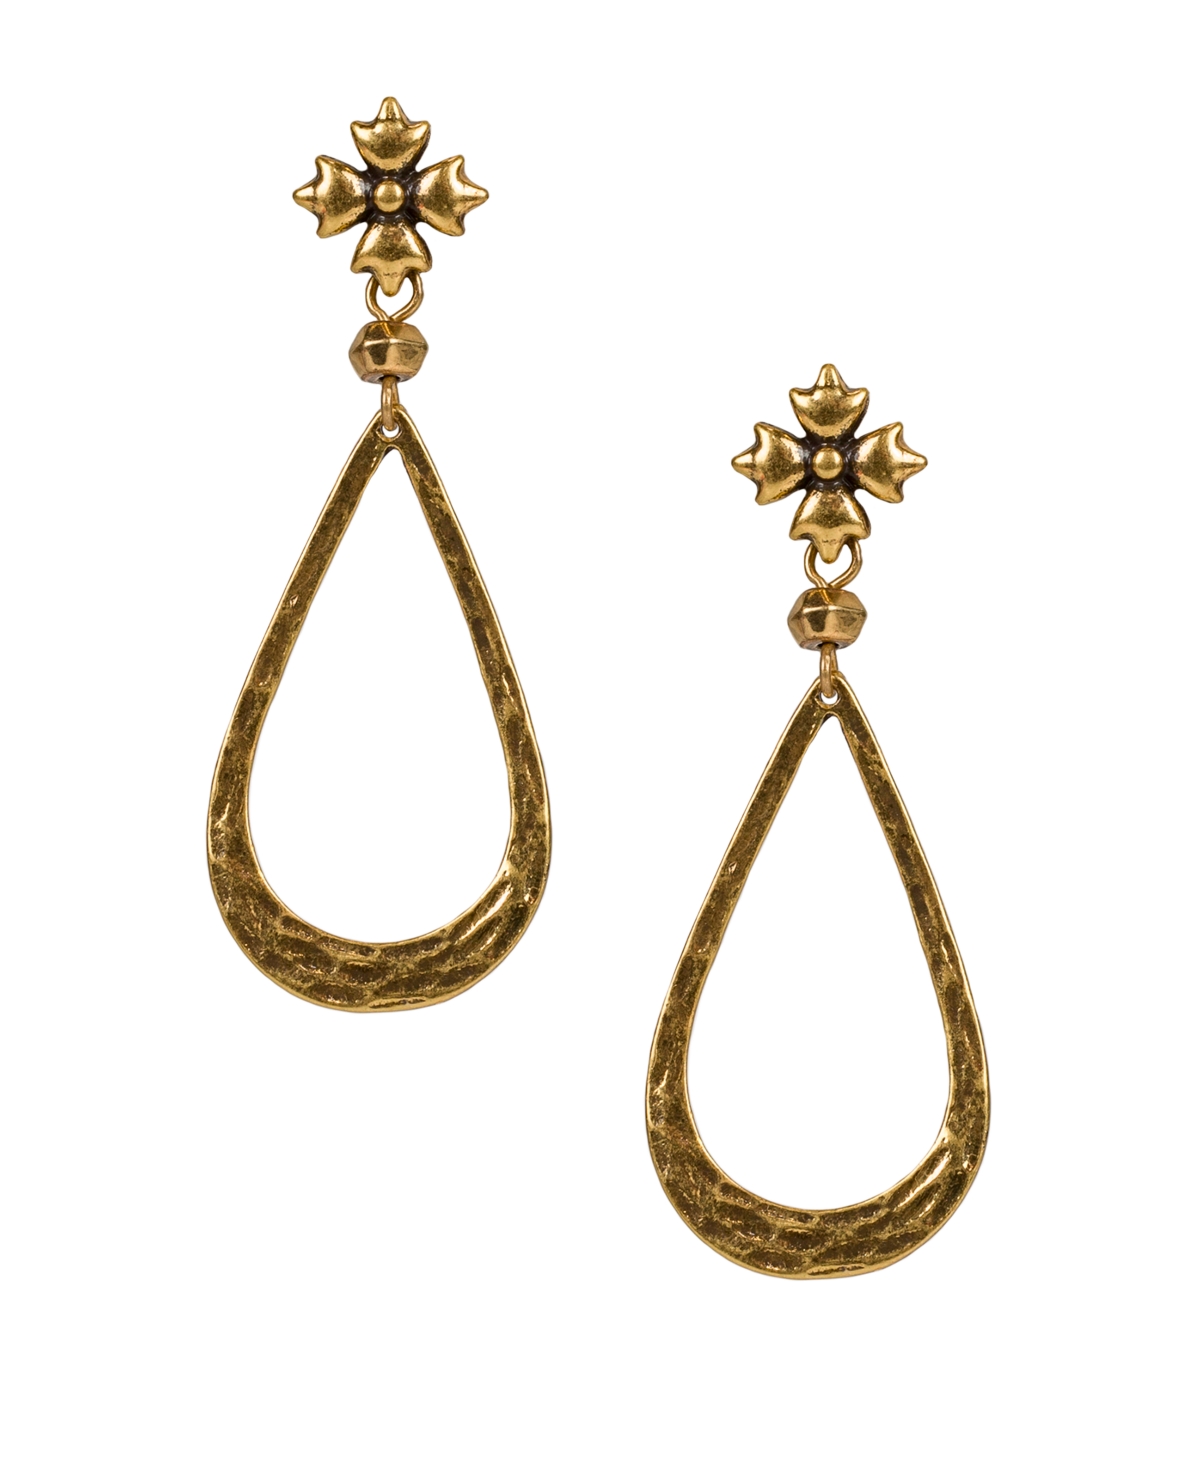 Gold-Tone Floret & Tear-Shape Drop Earrings - Russian Gold